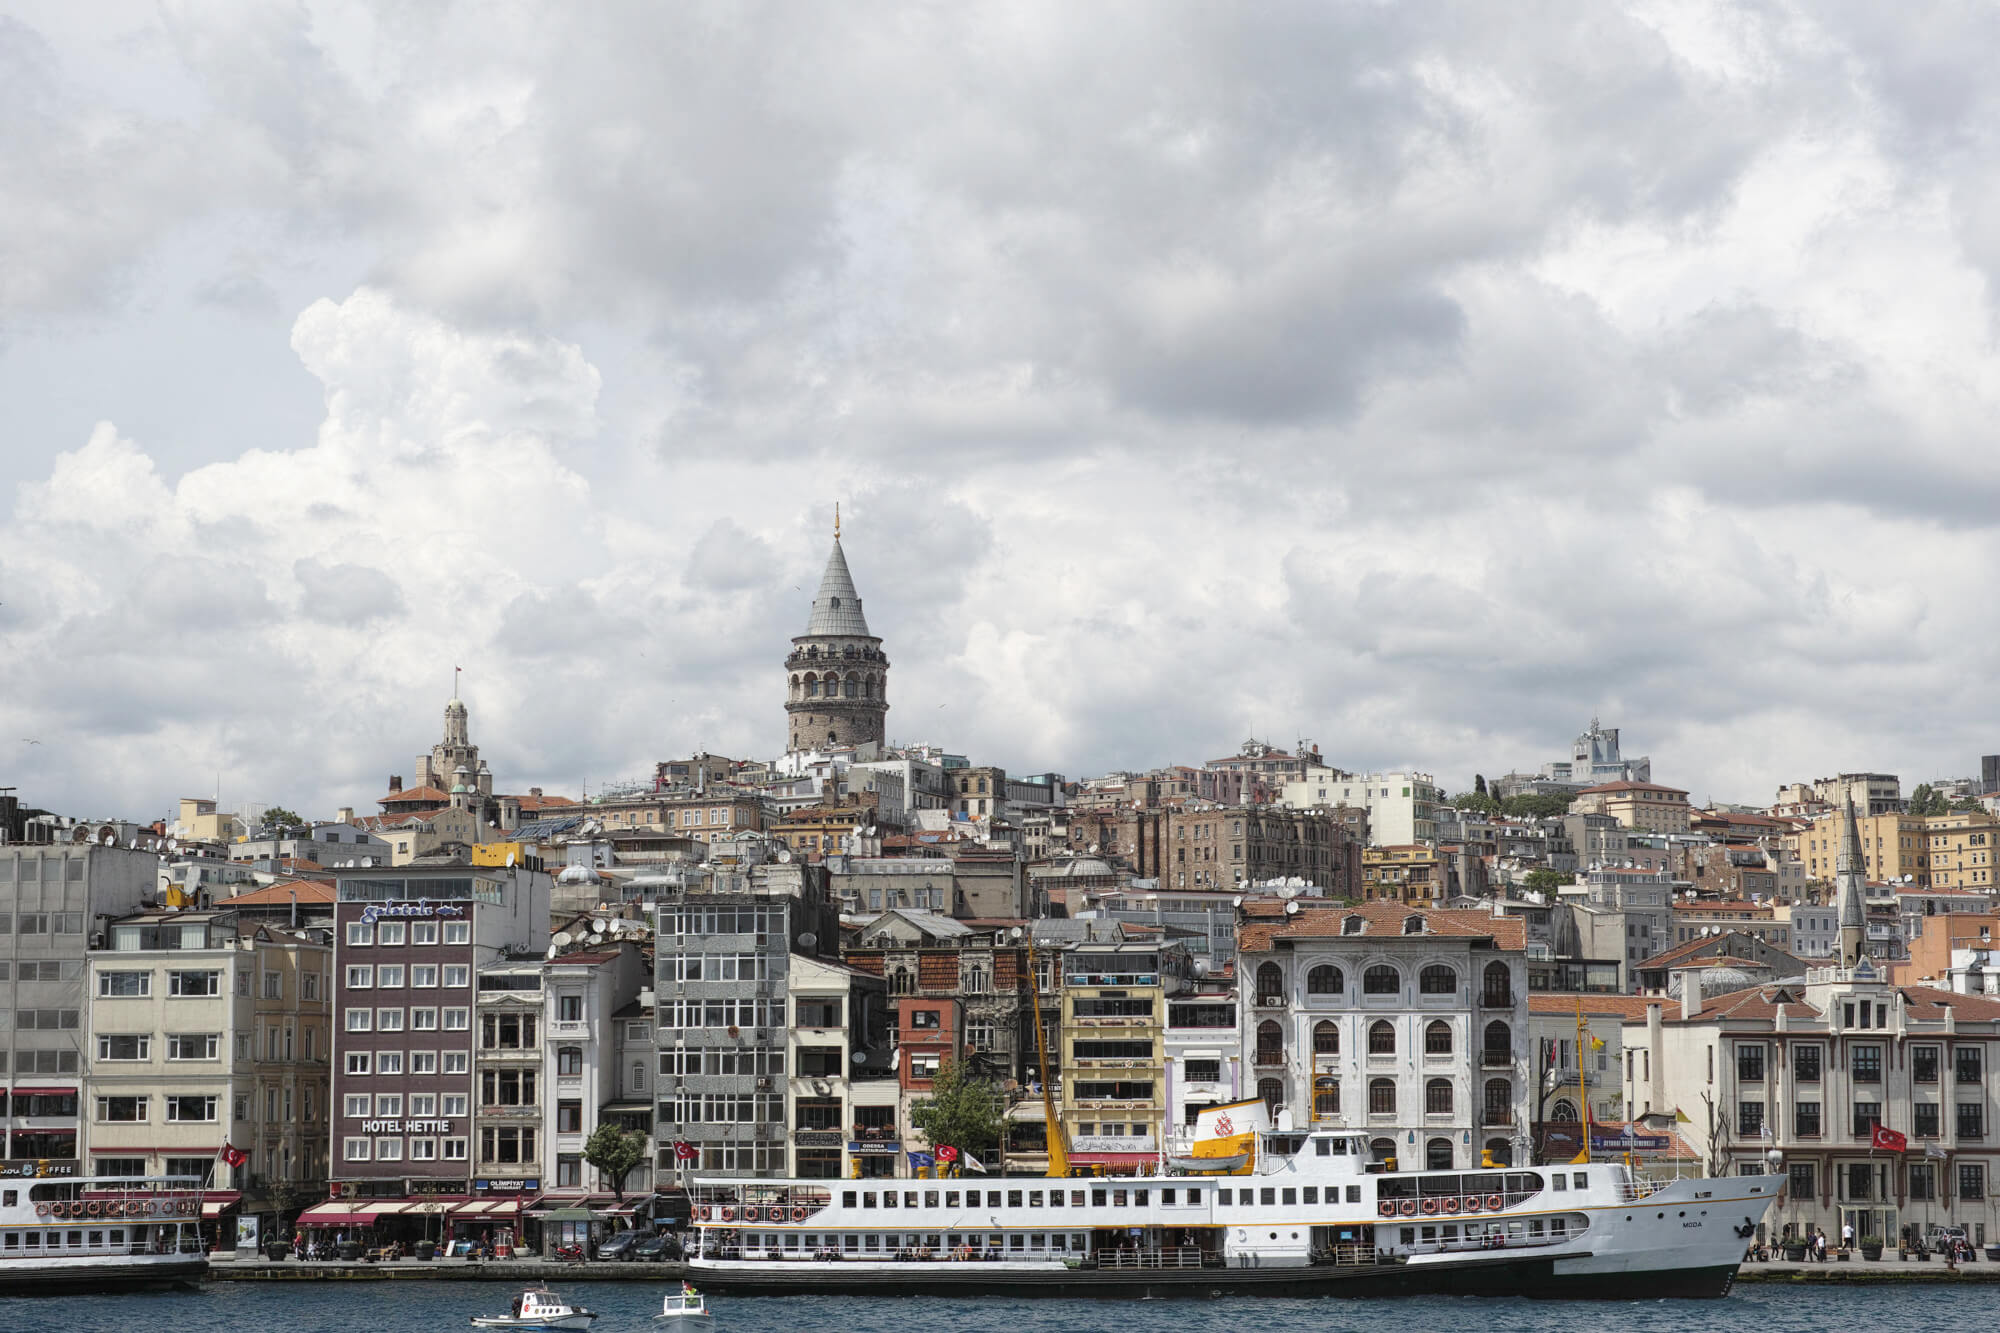 free city walking tour istanbul